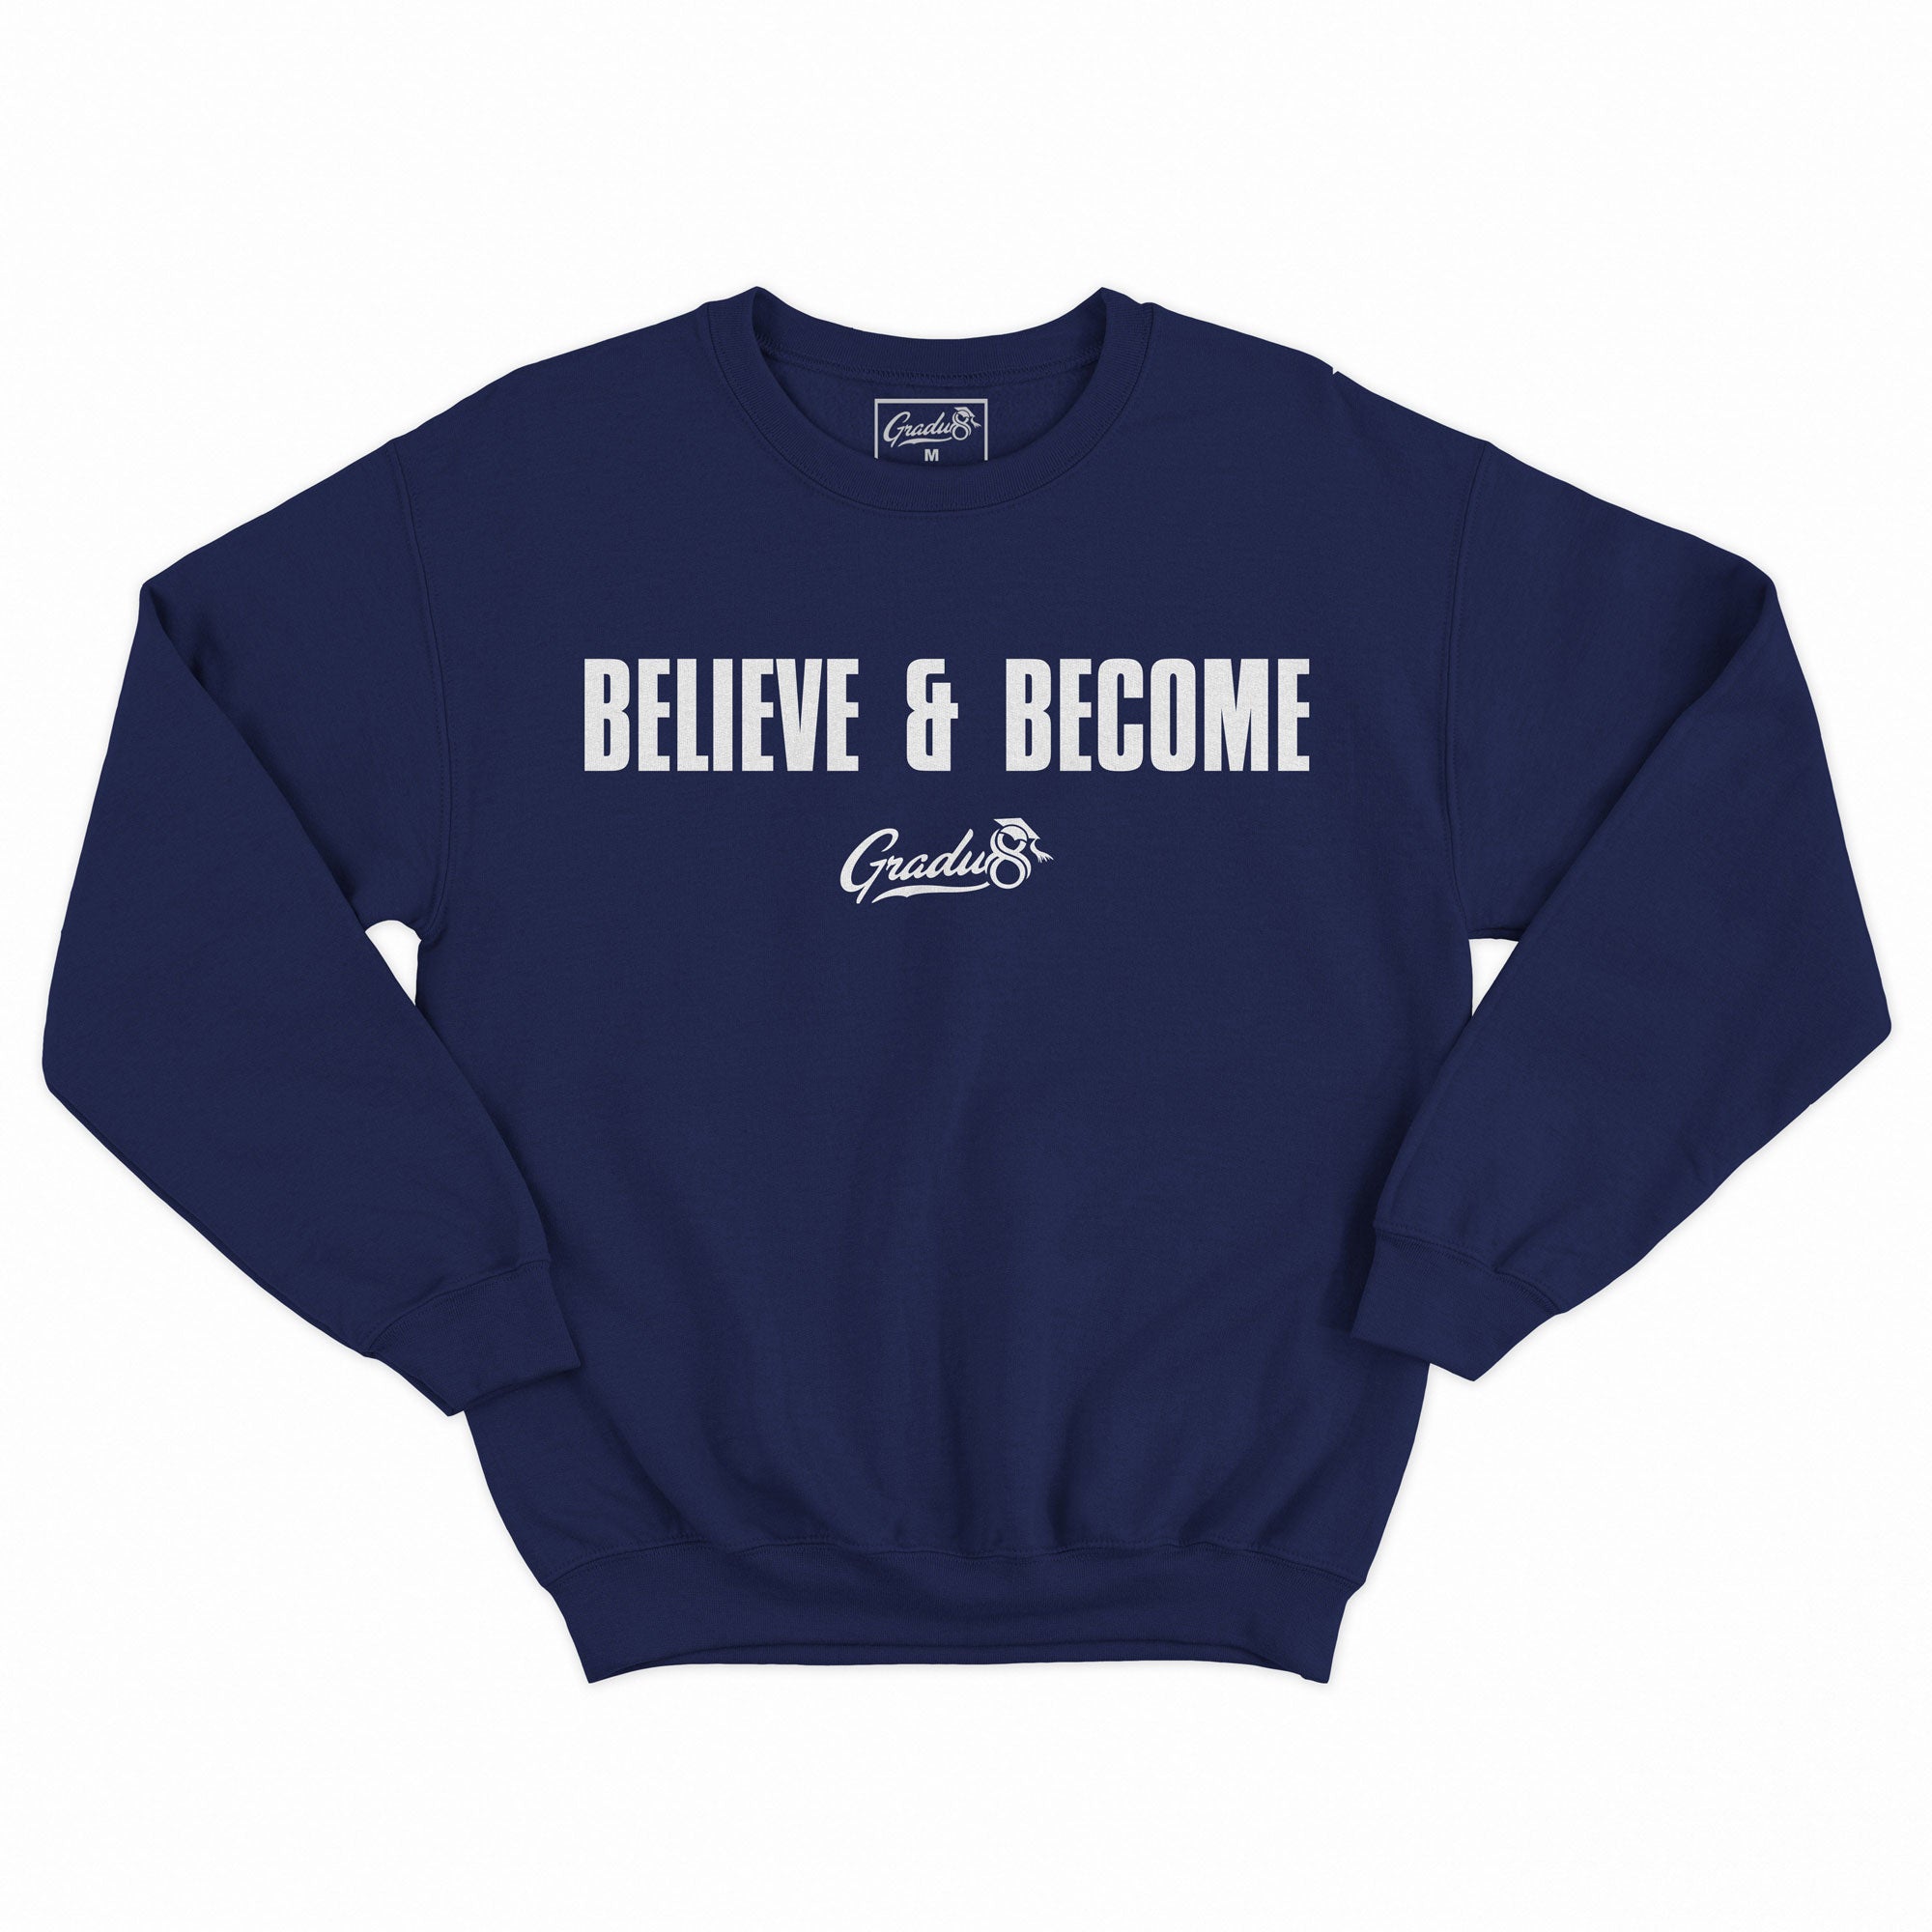 Official Believe & Become Premium Sweatshirt - Navy Blue